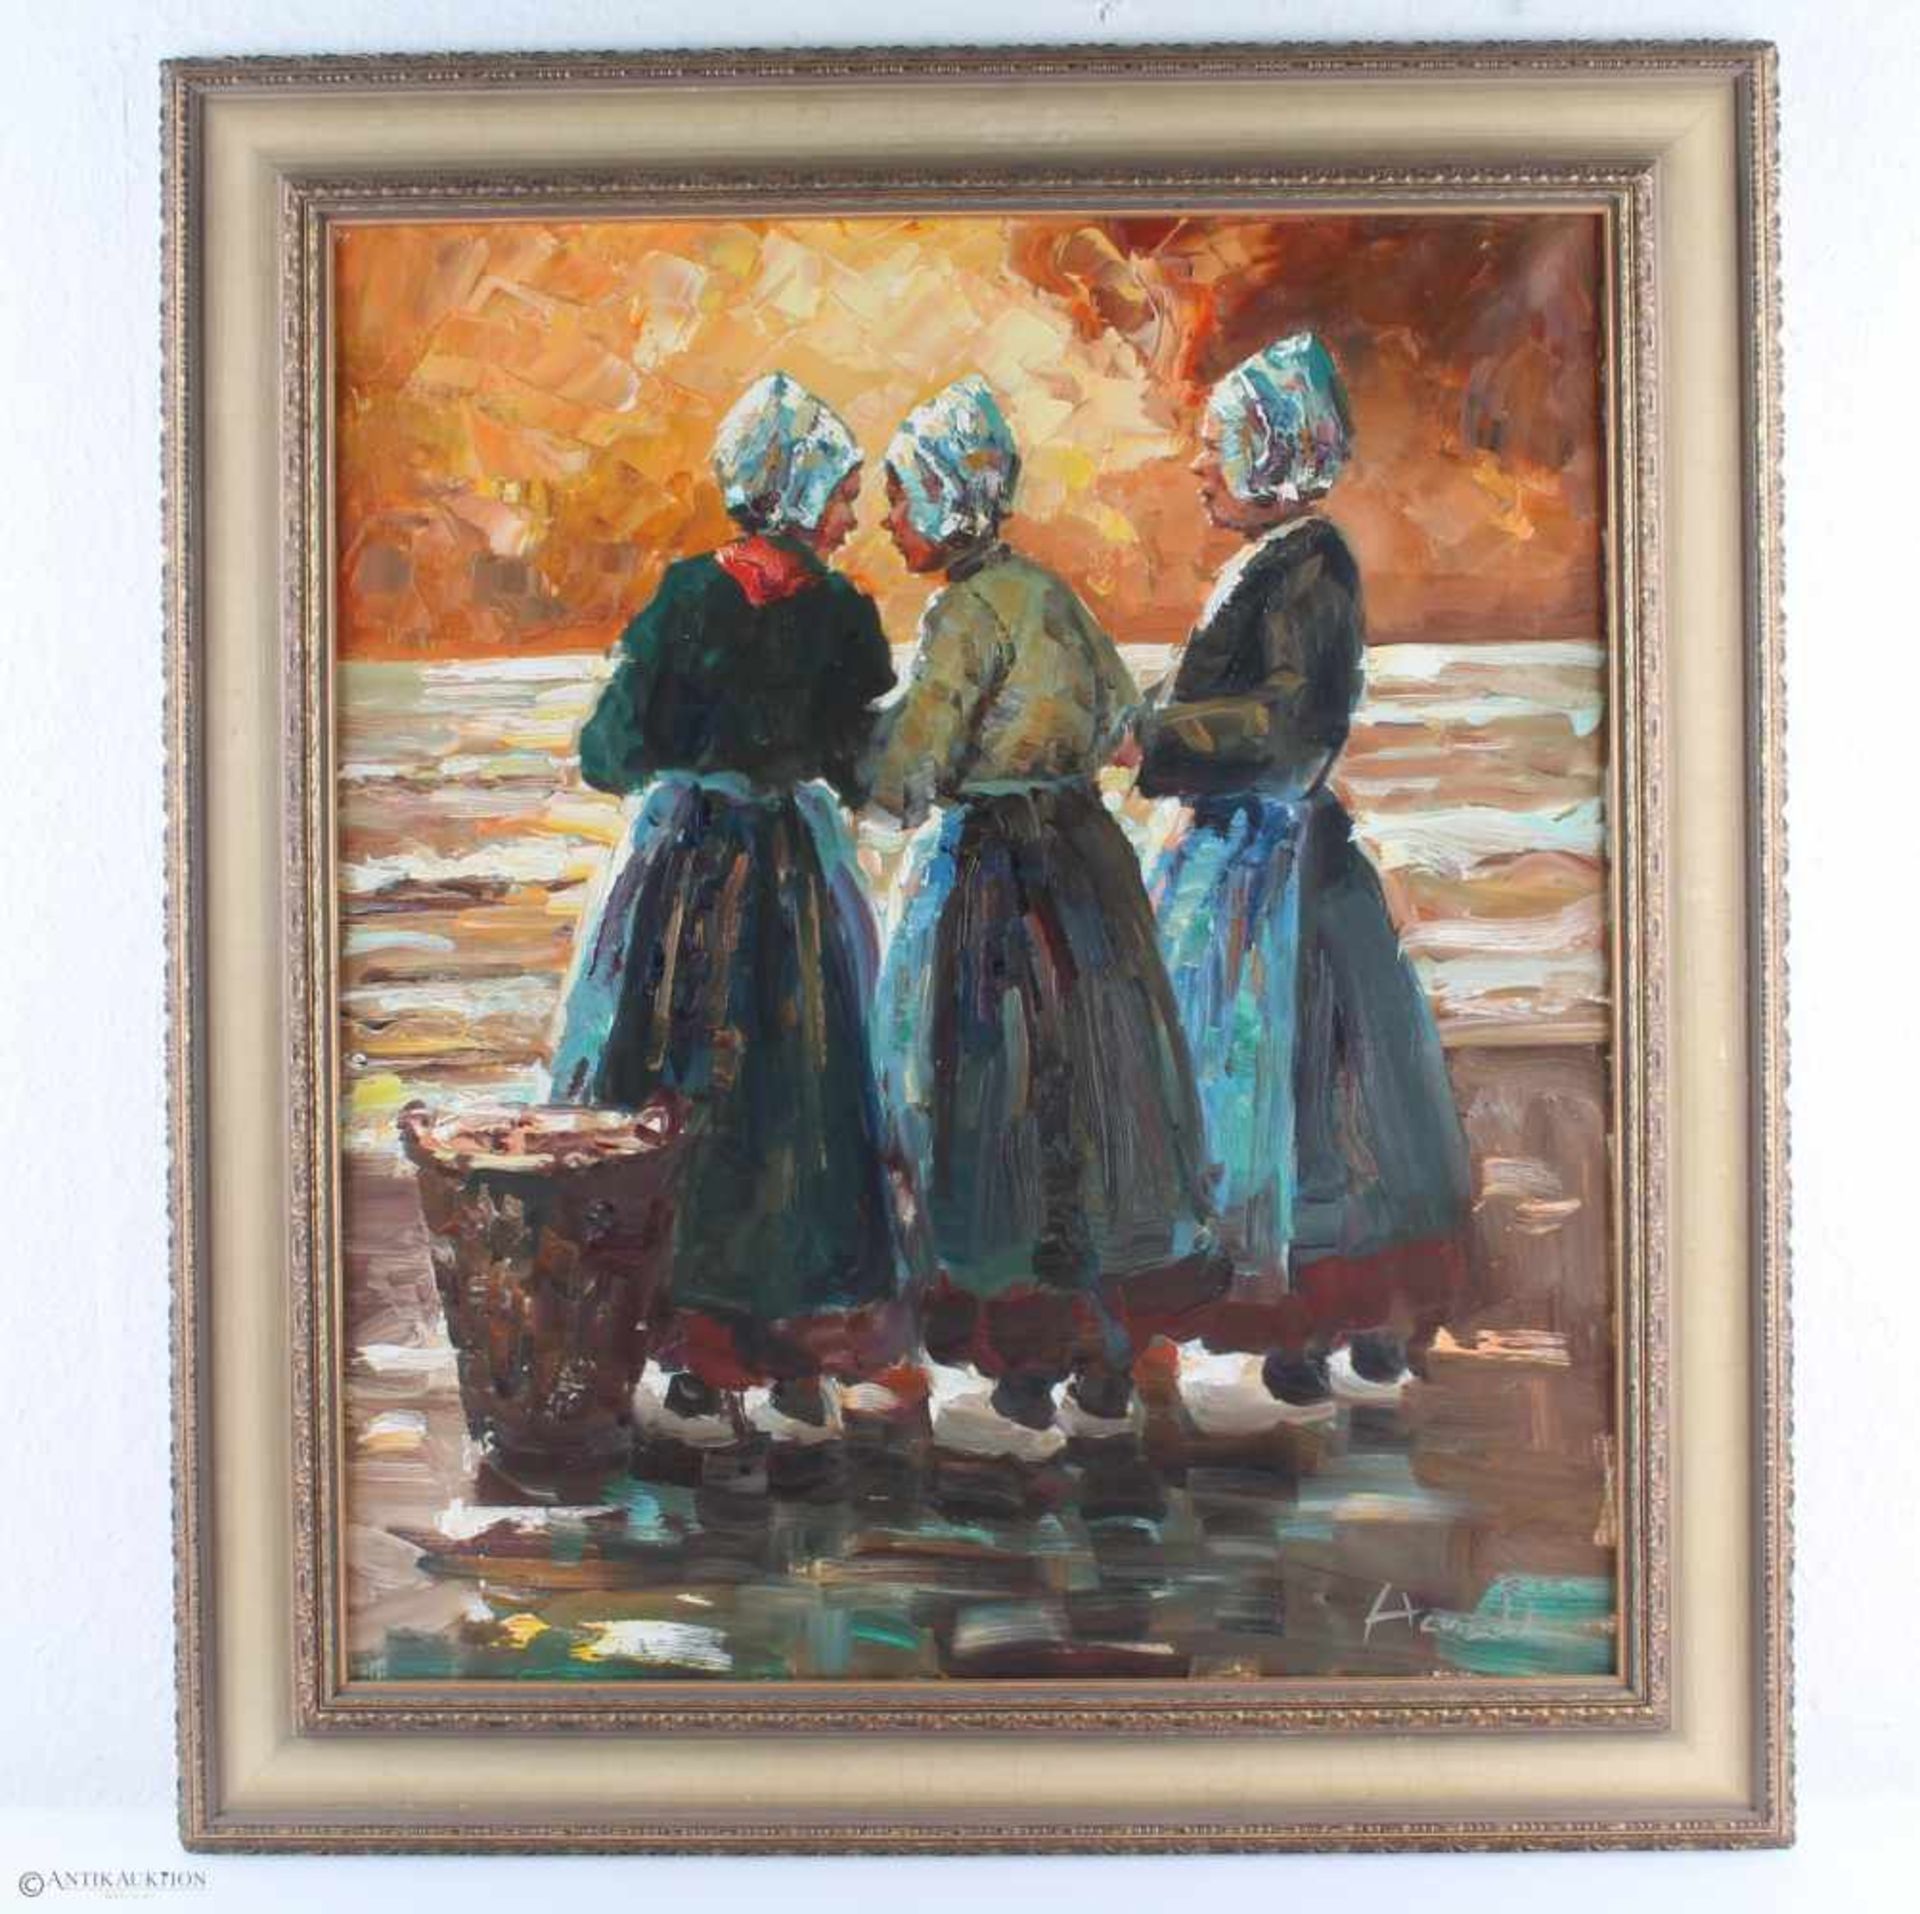 Großes Gemälde mit drei wartenden Frauen am Strand, signiert, Öl/Leinwand, u. rechts unleserlich - Bild 2 aus 4